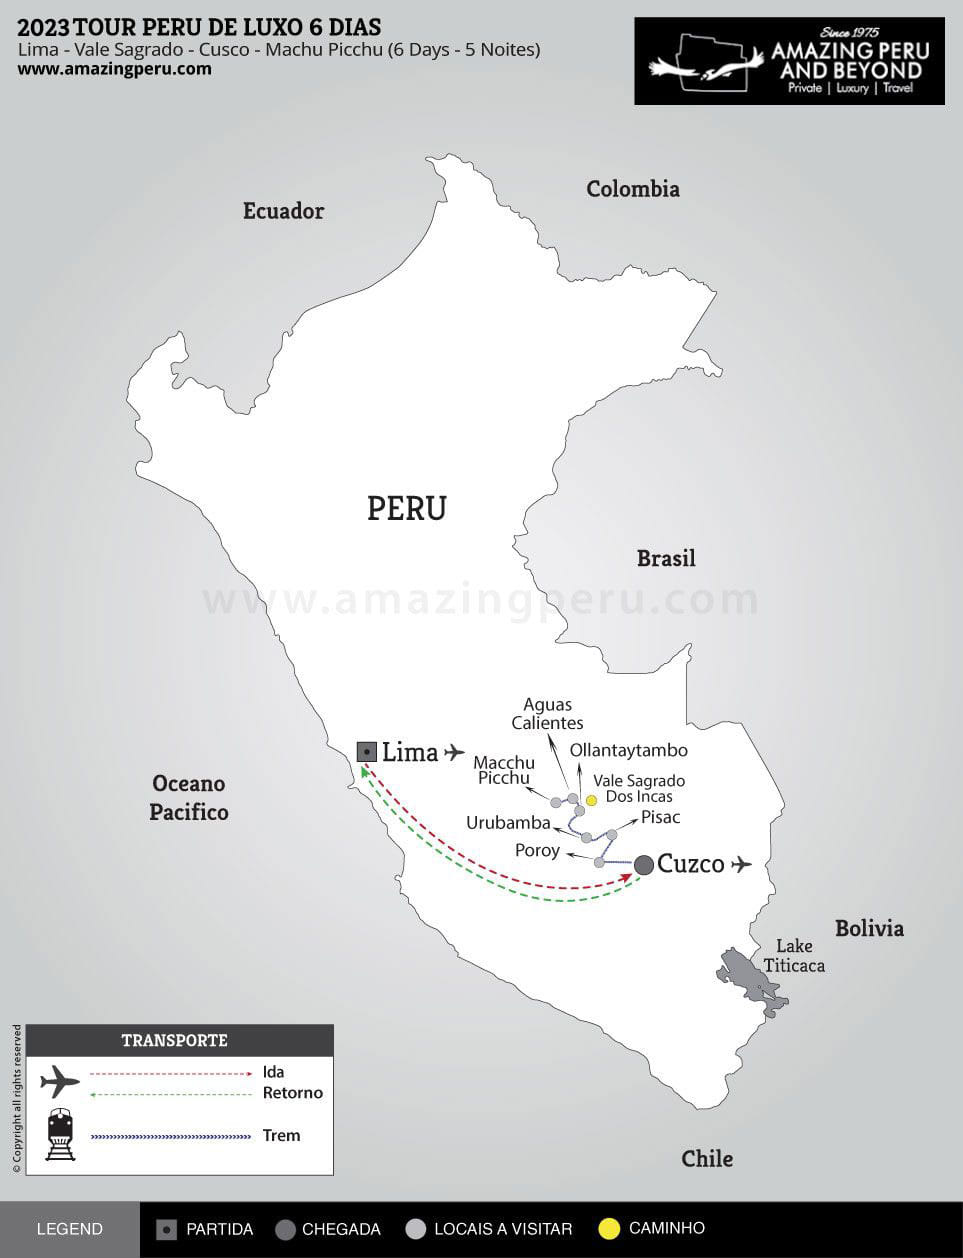 2024 Tour Peru de Luxo 6 Dias - 6 days / 5 nights.